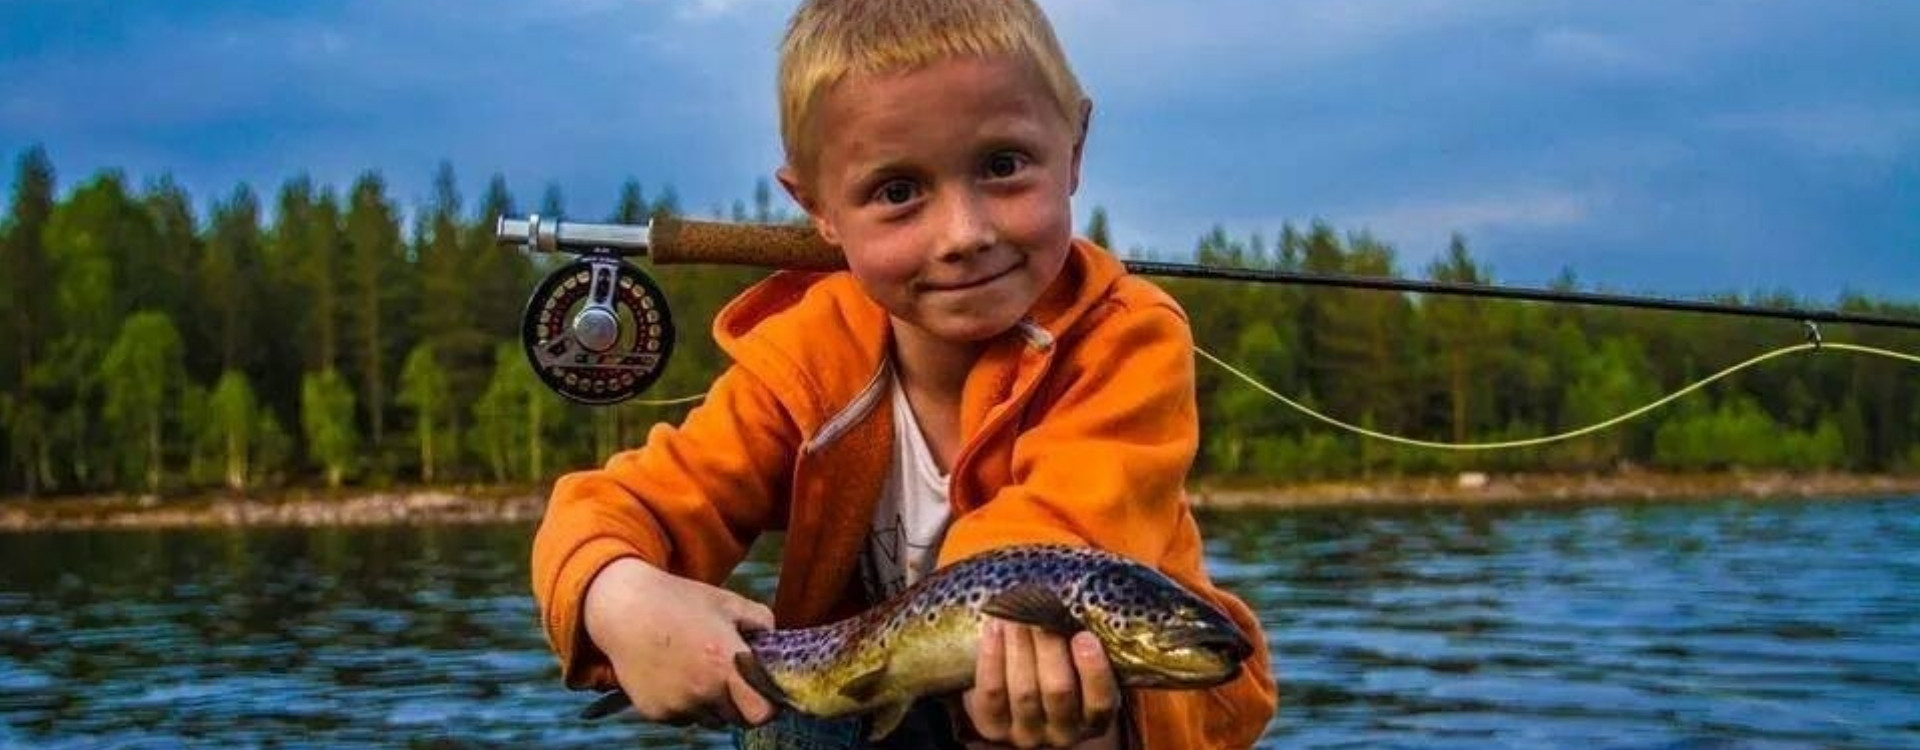 Мальчик ловил рыбу на реке. Рыбак с рыбой. Рыбалка фото. Маленький рыболов. Рыбалка летом.